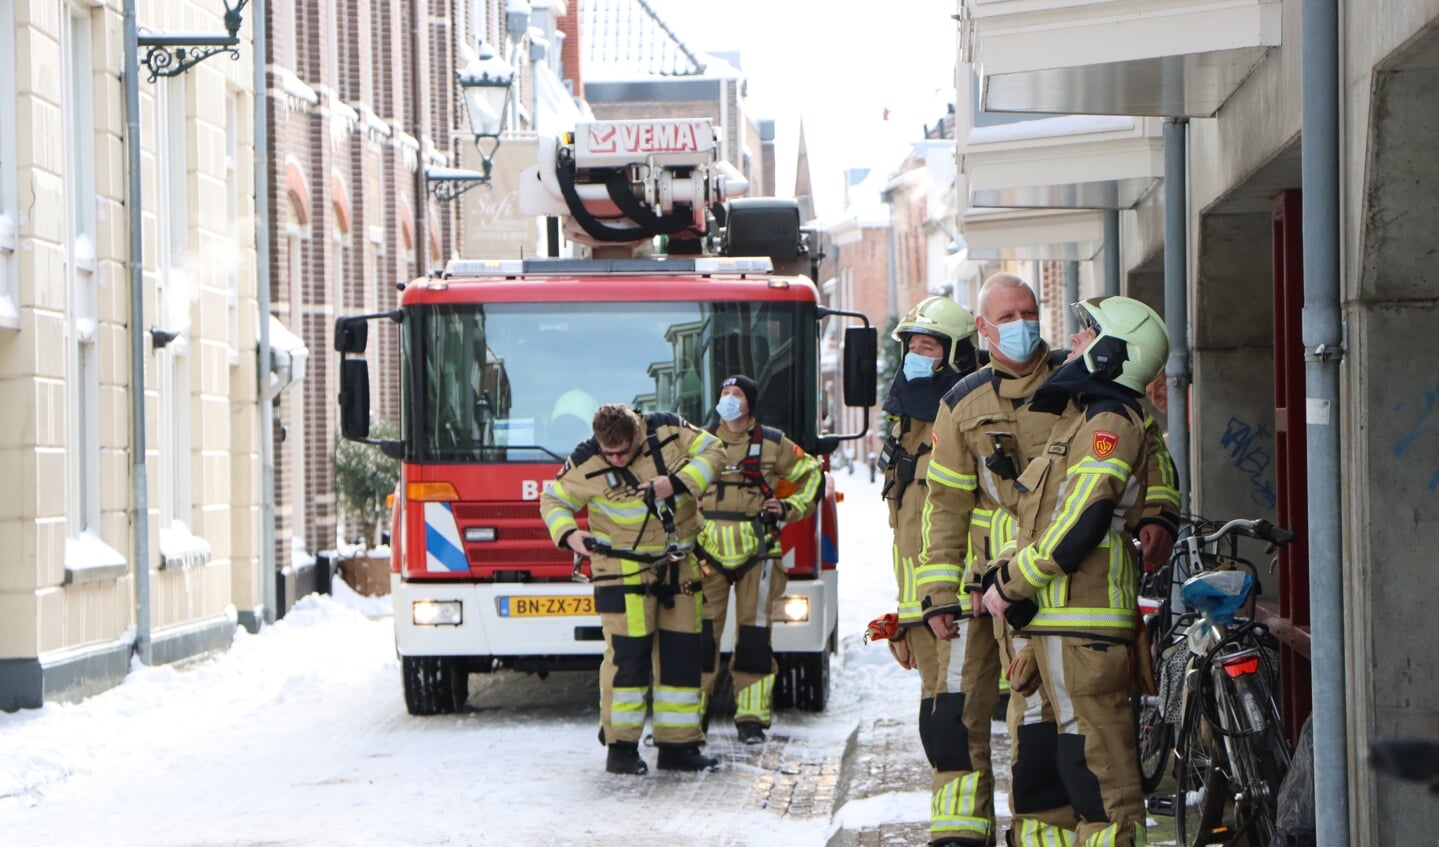 Kampen - De brandweer van Kampen werd dinsdag 9 februari gealarmeerd voor een bult sneeuw dat van het dak aan de Hofstraat dreigde te glijden. De brandweer heeft het met behulp van de hoogwerker verwijderd